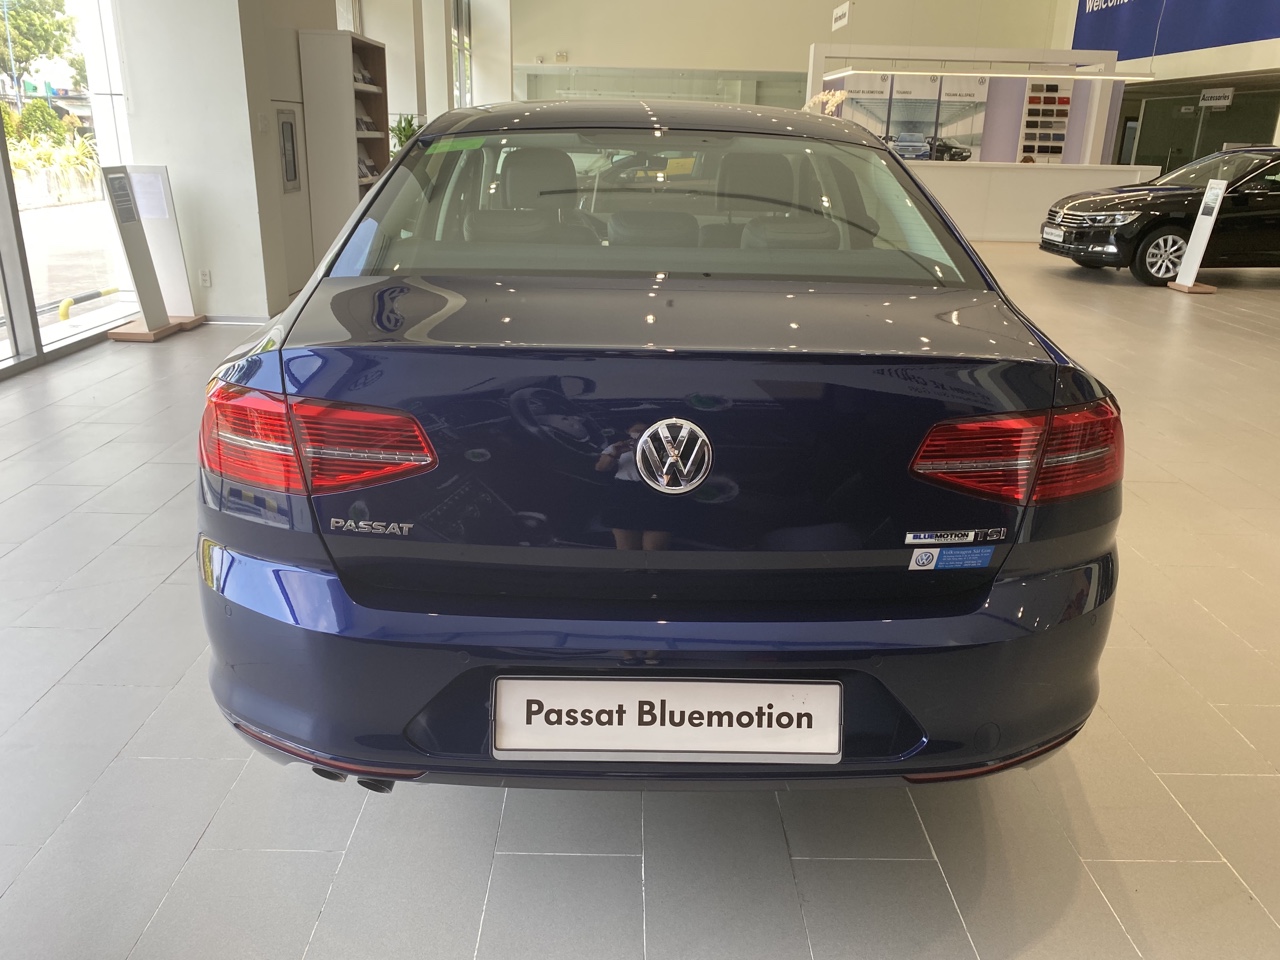 Bán xe Passat Bluemotion nhập khẩu từ Đức, cảm giác lái cực chất mà không thể bỏ qua-4